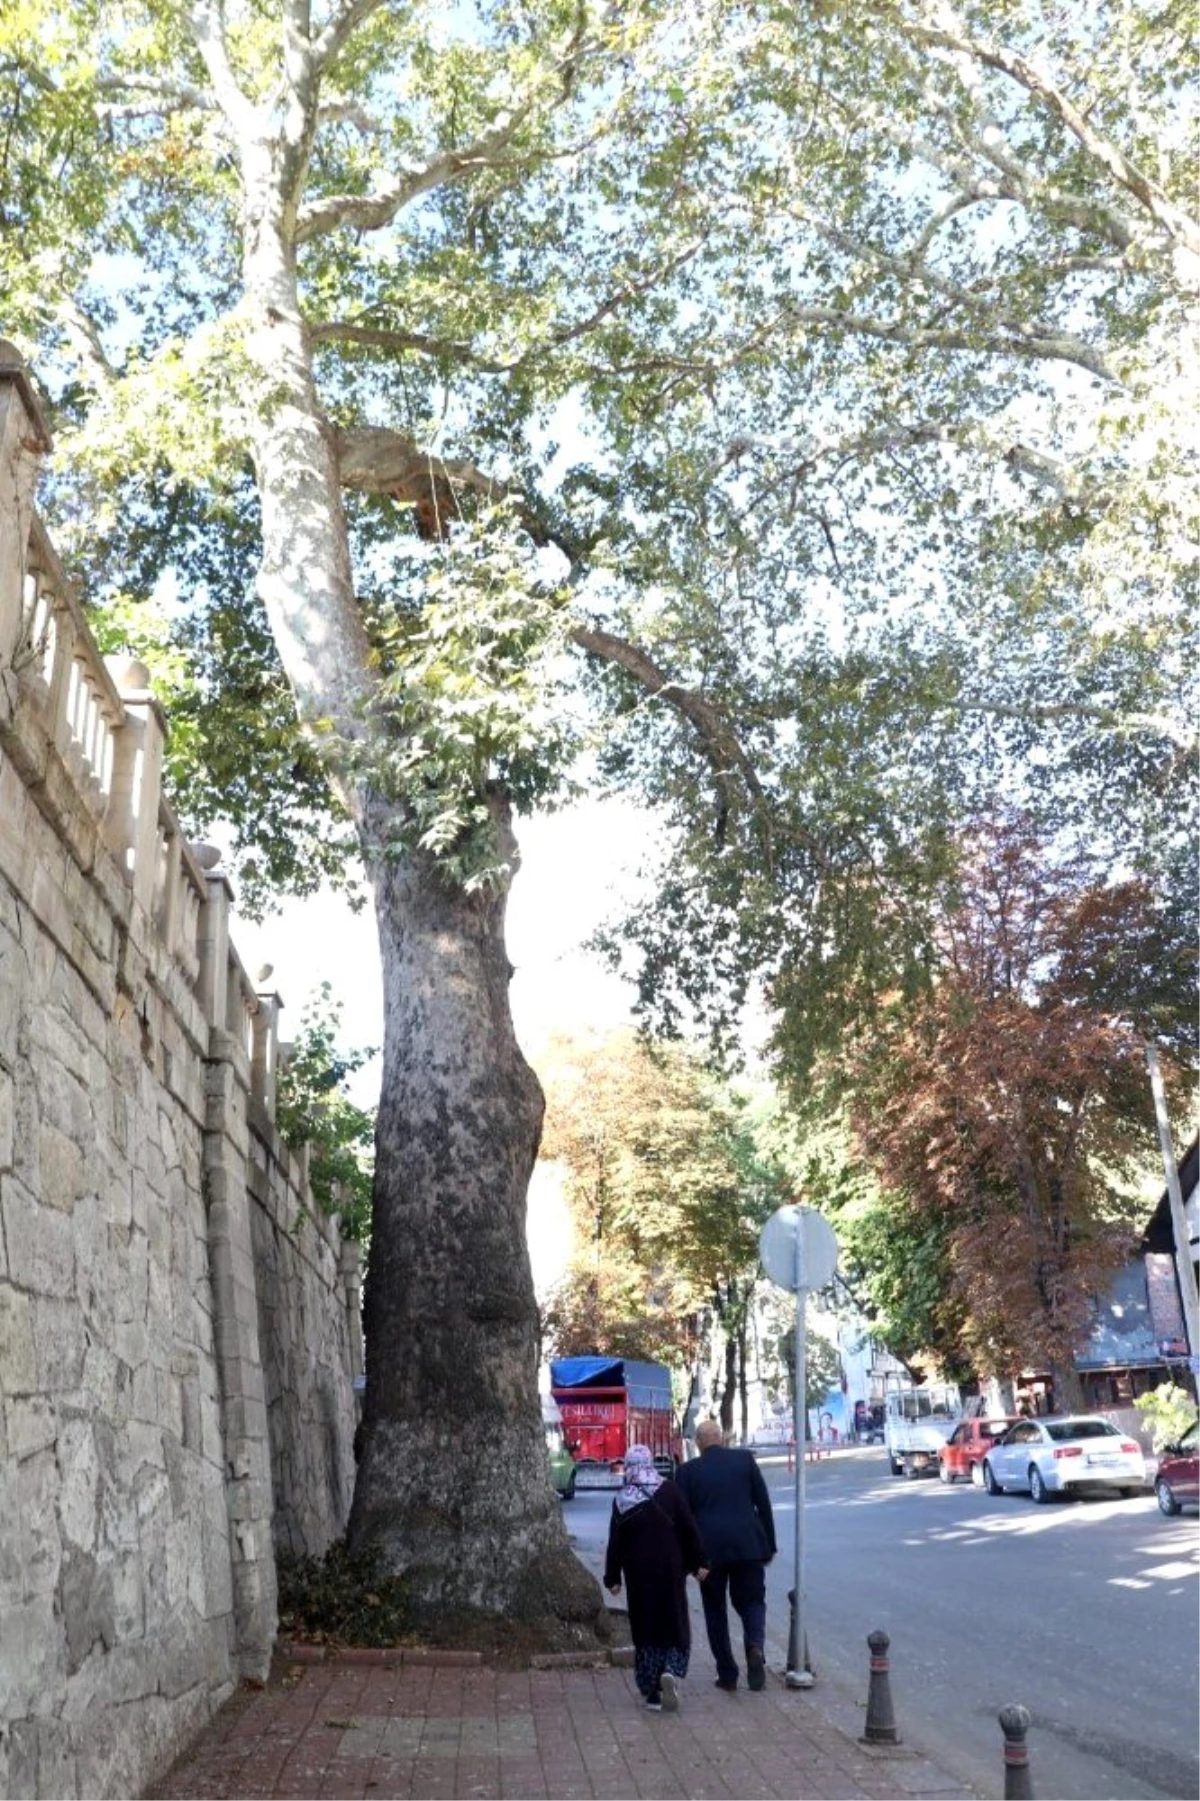 Çevre ve Şehircilik İl Müdürlüğü: "Çınar ağacı 290-300 yaşlarında"